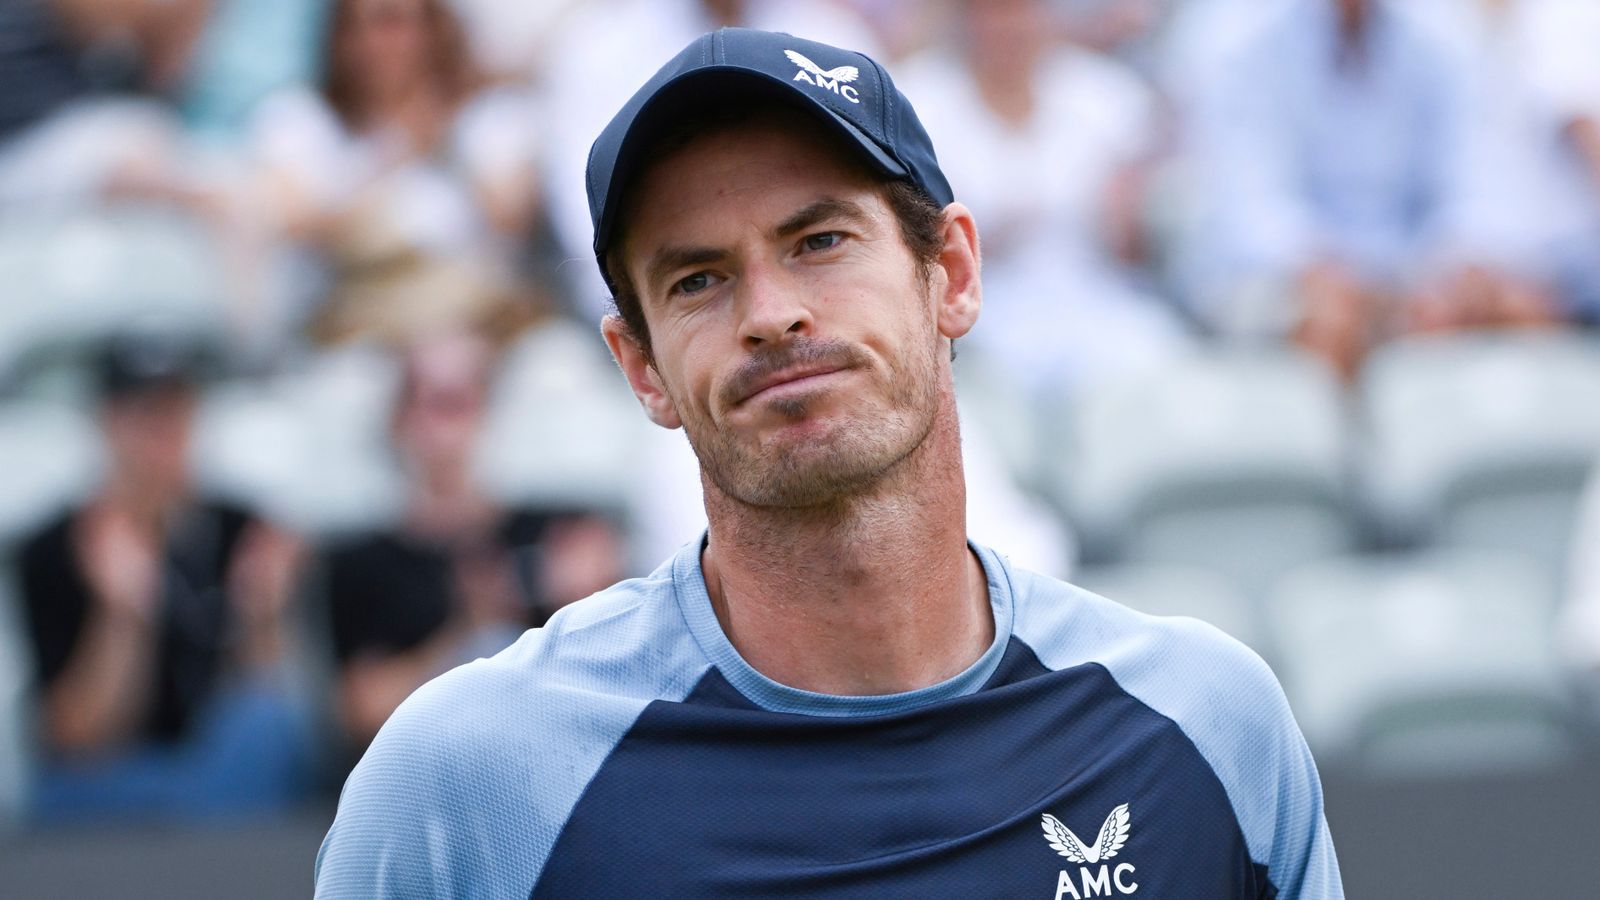 Andy Murray absen dari Kejuaraan Cinque minggu ini di Queen’s Club karena cedera |  berita tenis